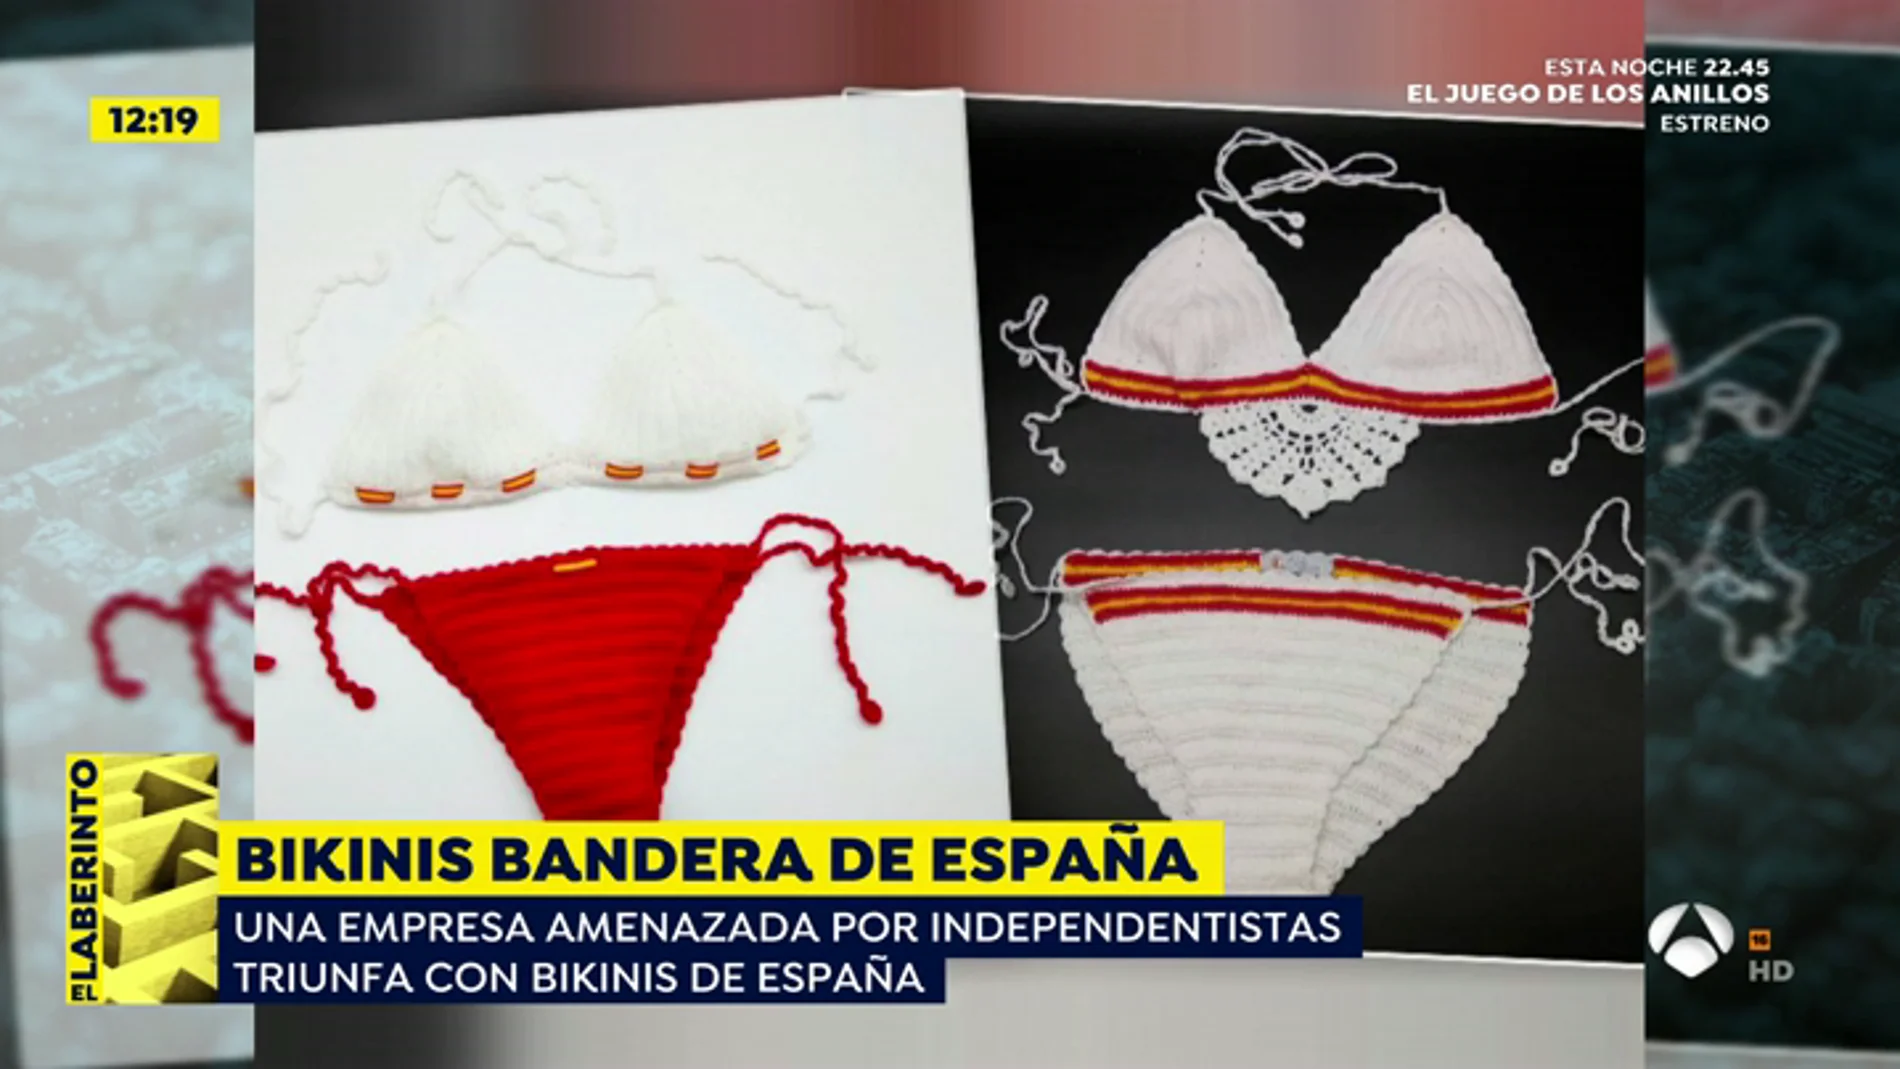 La dueña de La Flamenca de Borgoña recibe amenazas tras diseñar bikinis con la bandera de España 